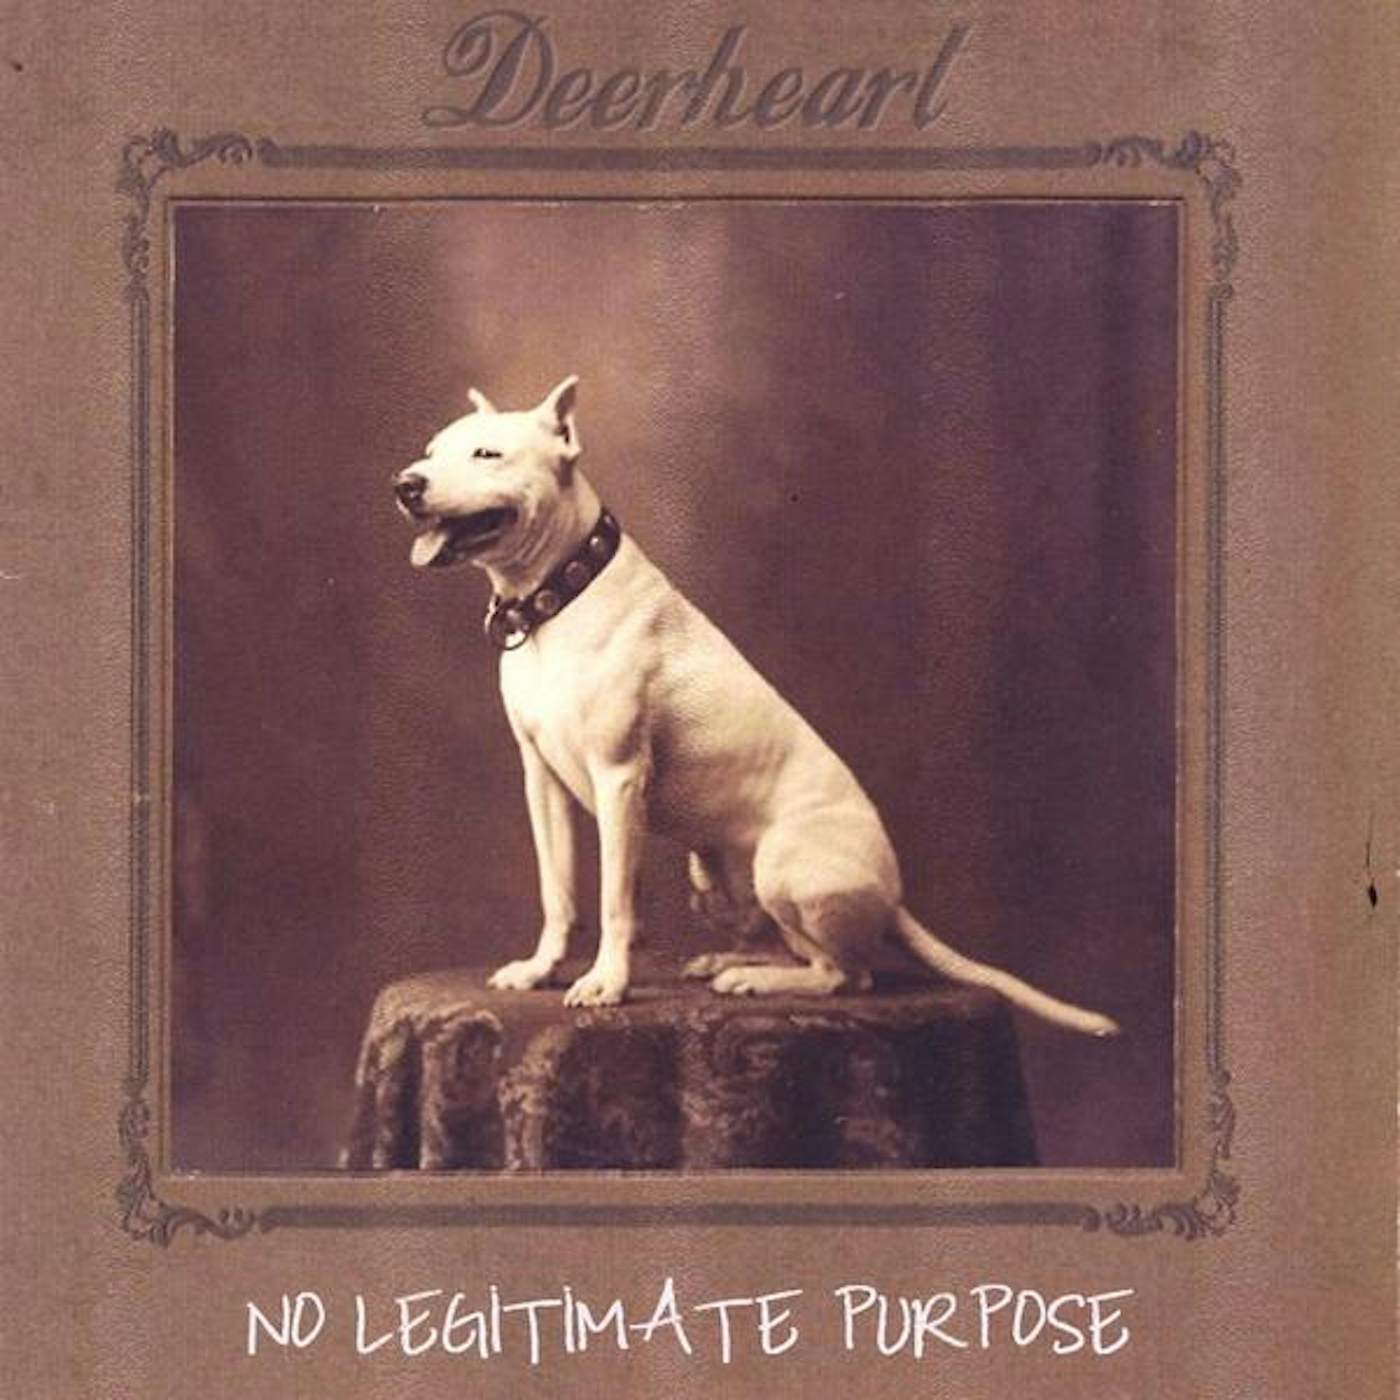 Deerheart NO LEGITIMATE PURPOSE CD